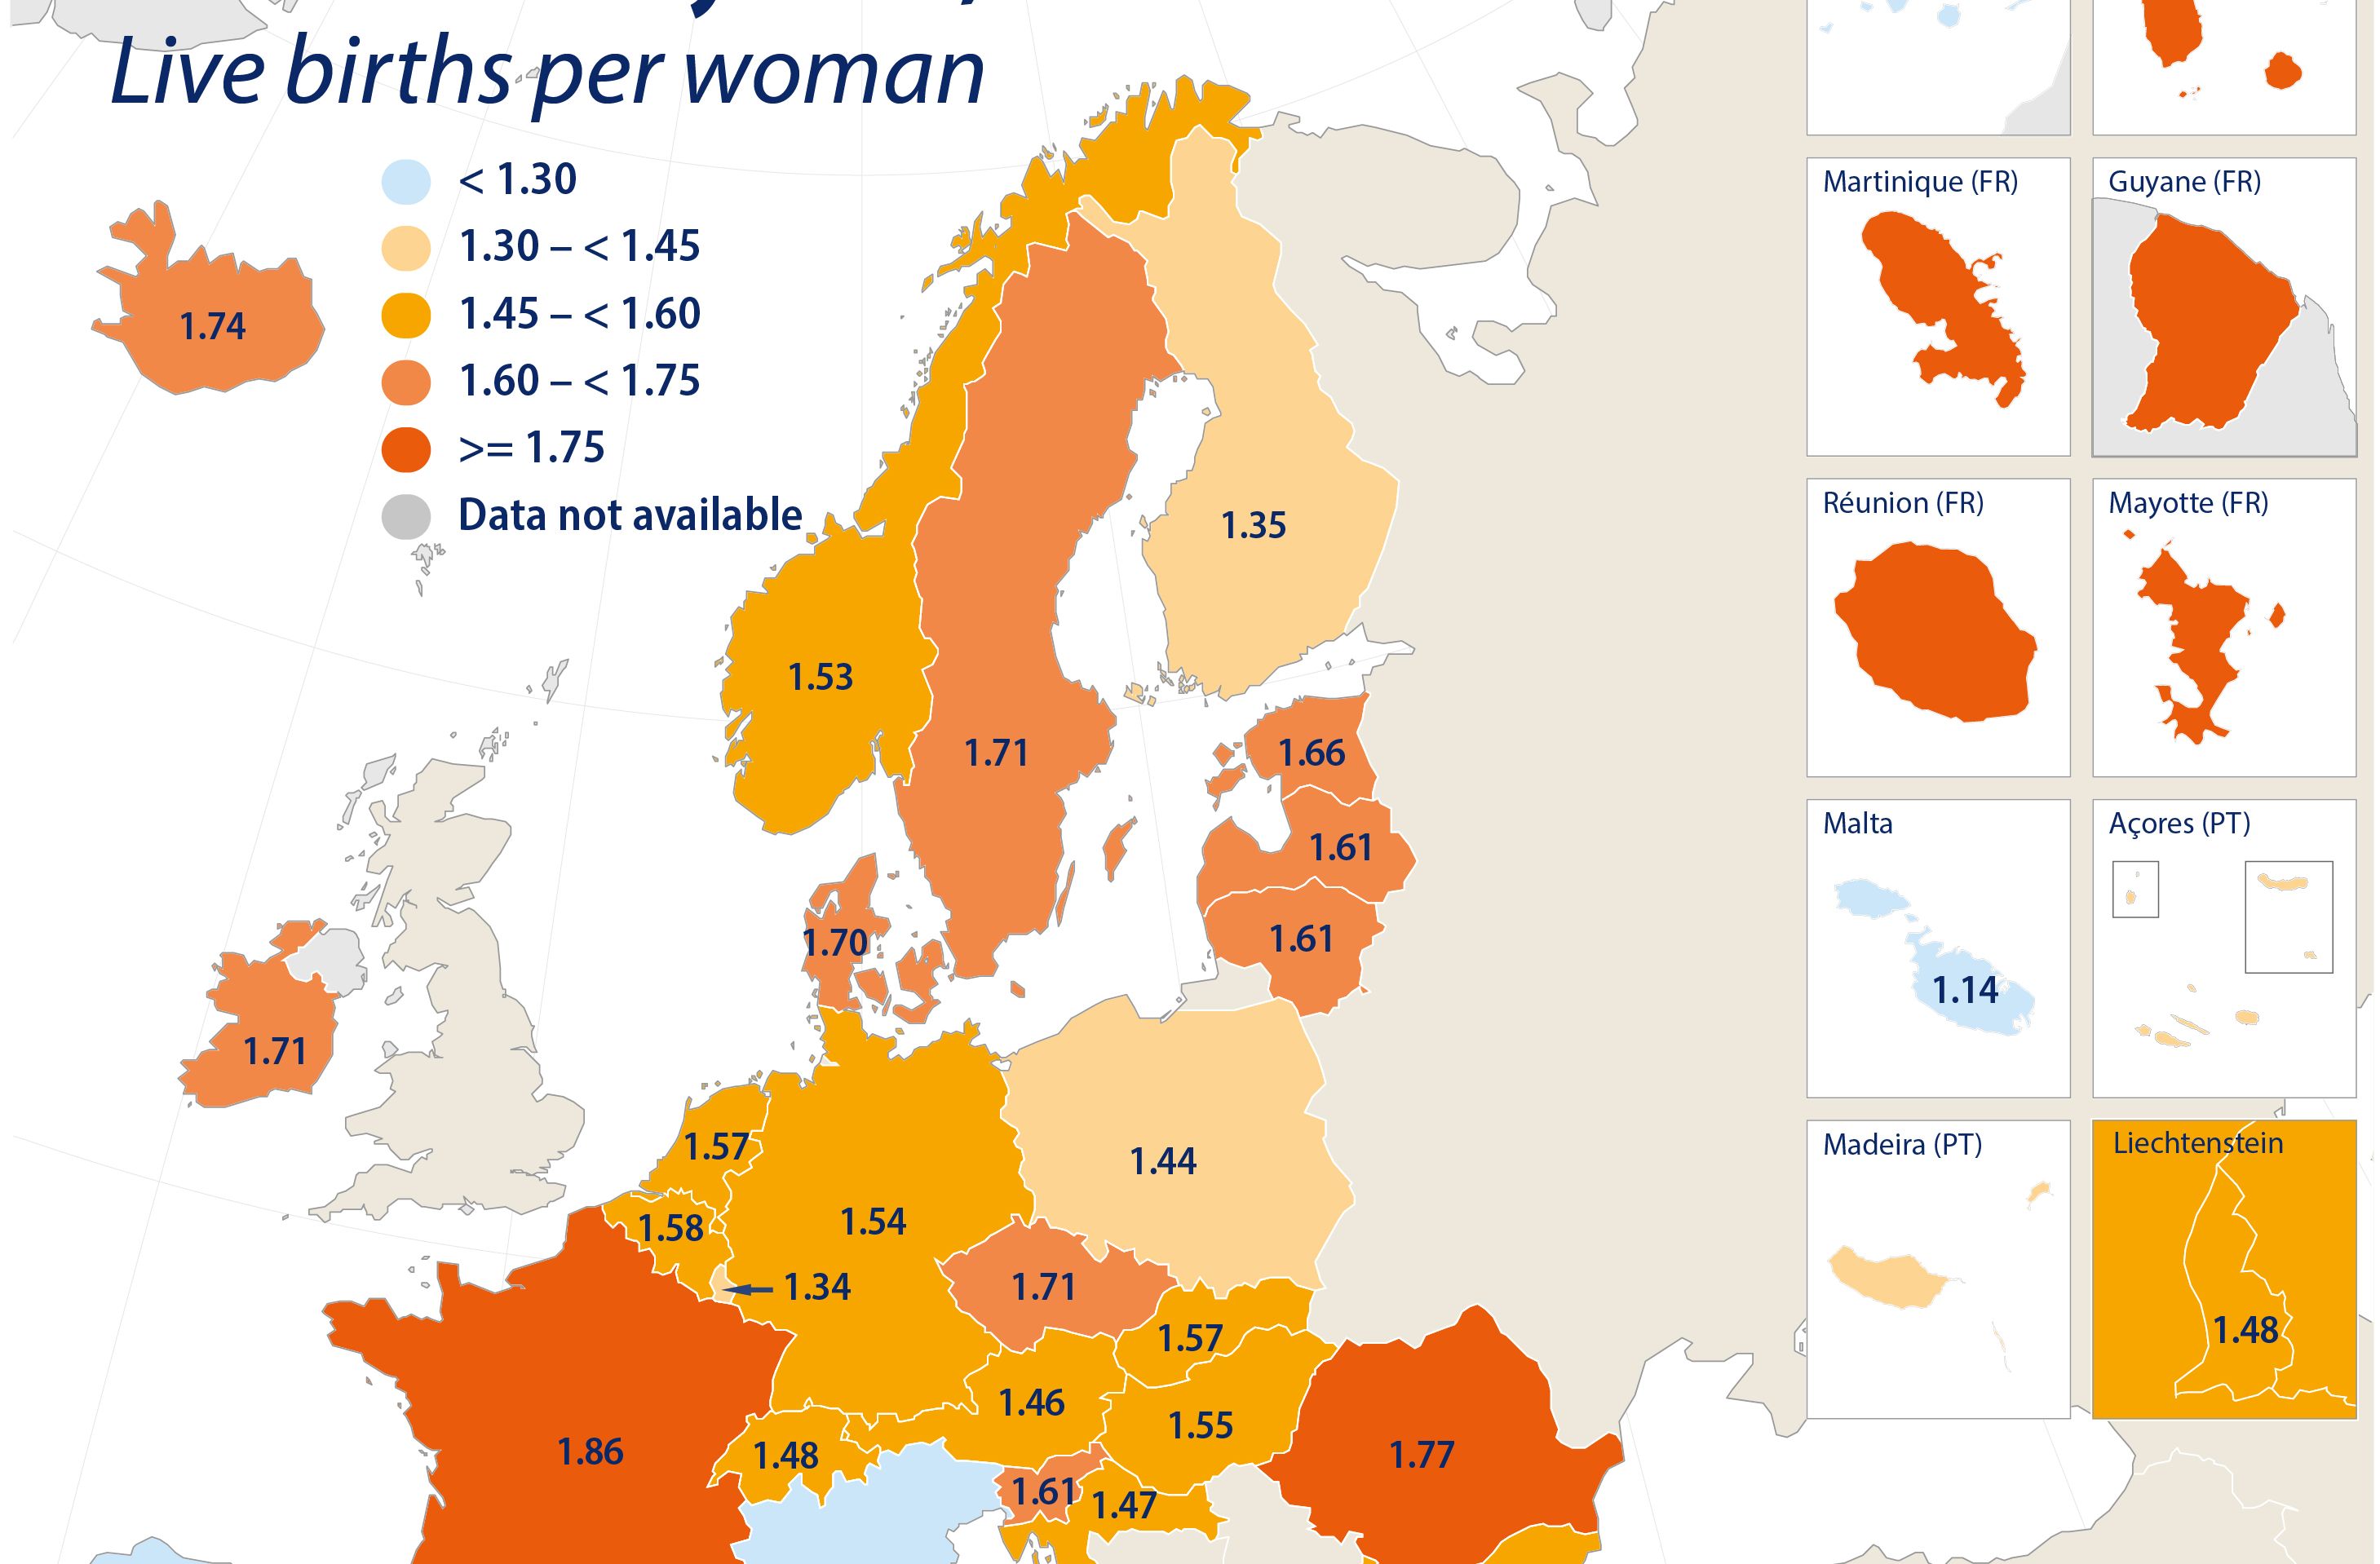 DECLINUL NASTERILOR IN UE – Eurostat: rata totala a fertilitatii s-a ridicat la 1,53 nasteri pe femeie in UE in 2019. Franta si Romania, statele cu cea mai mare rata a fertilitatii